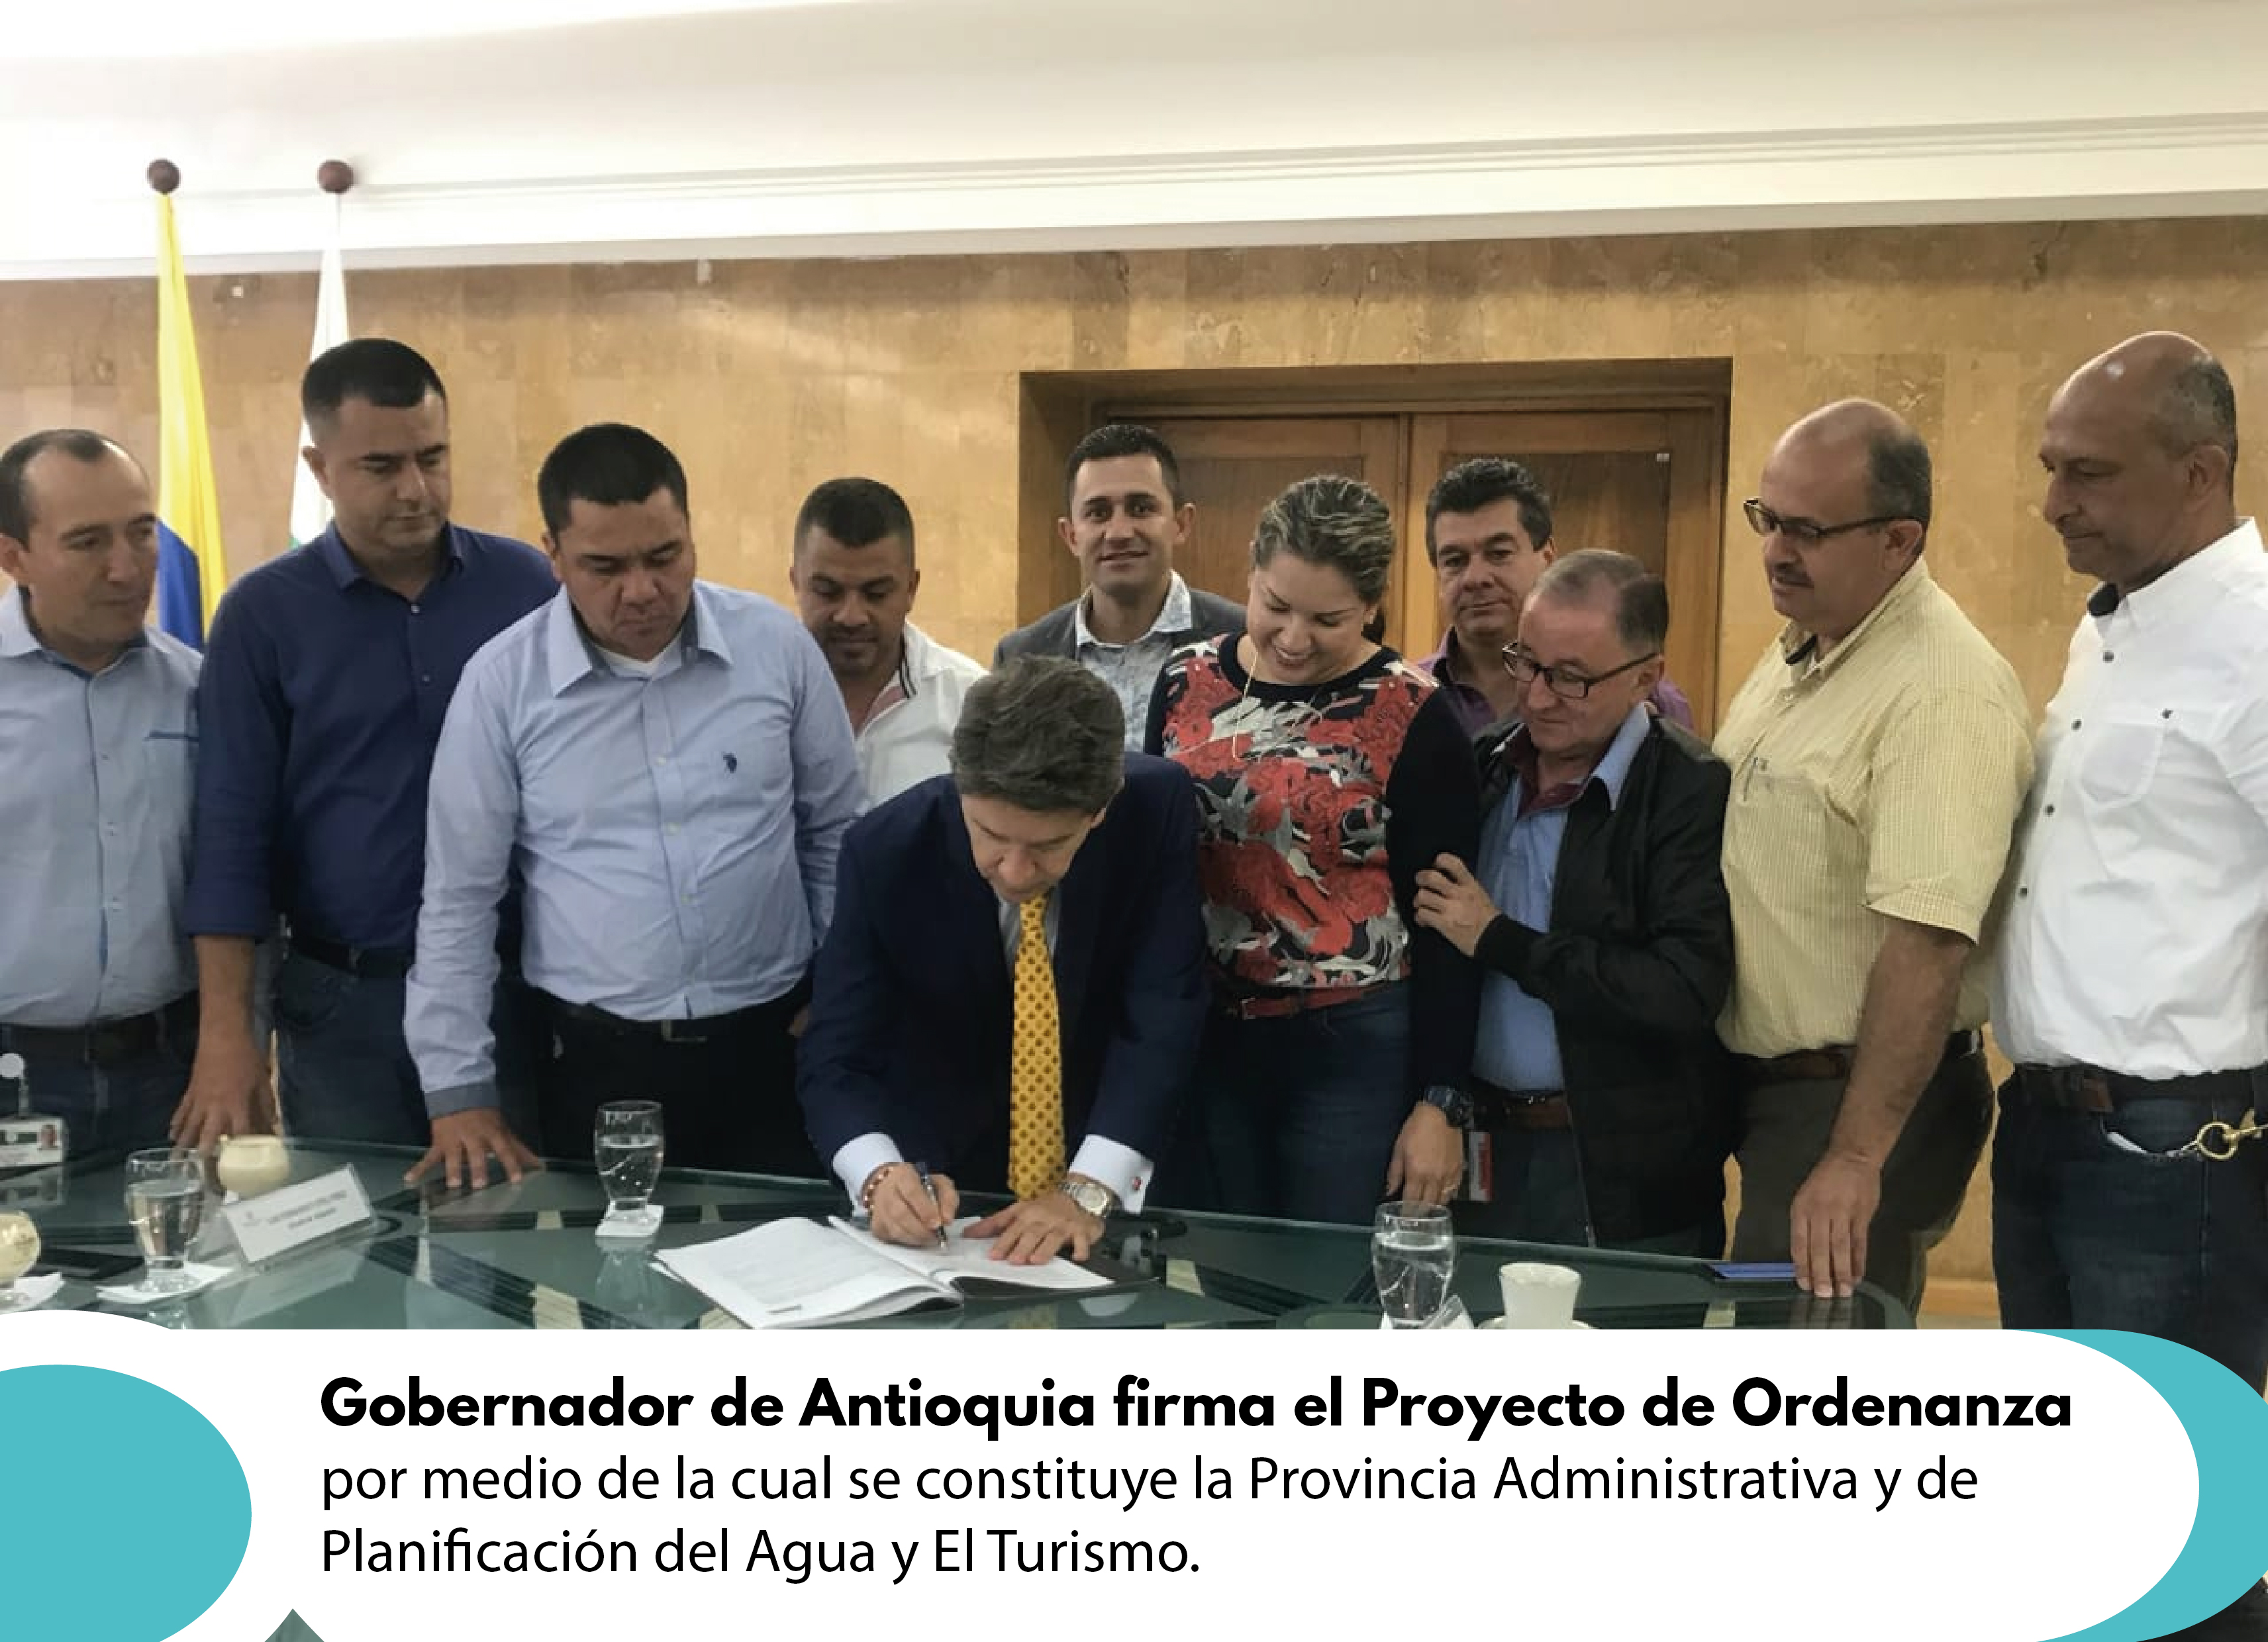 Gobernador de Antioquia firma el Proyecto de Ordenanza por medio de la cual se constituye la Provincia Administrativa y de Planificación del Agua y El Turismo.